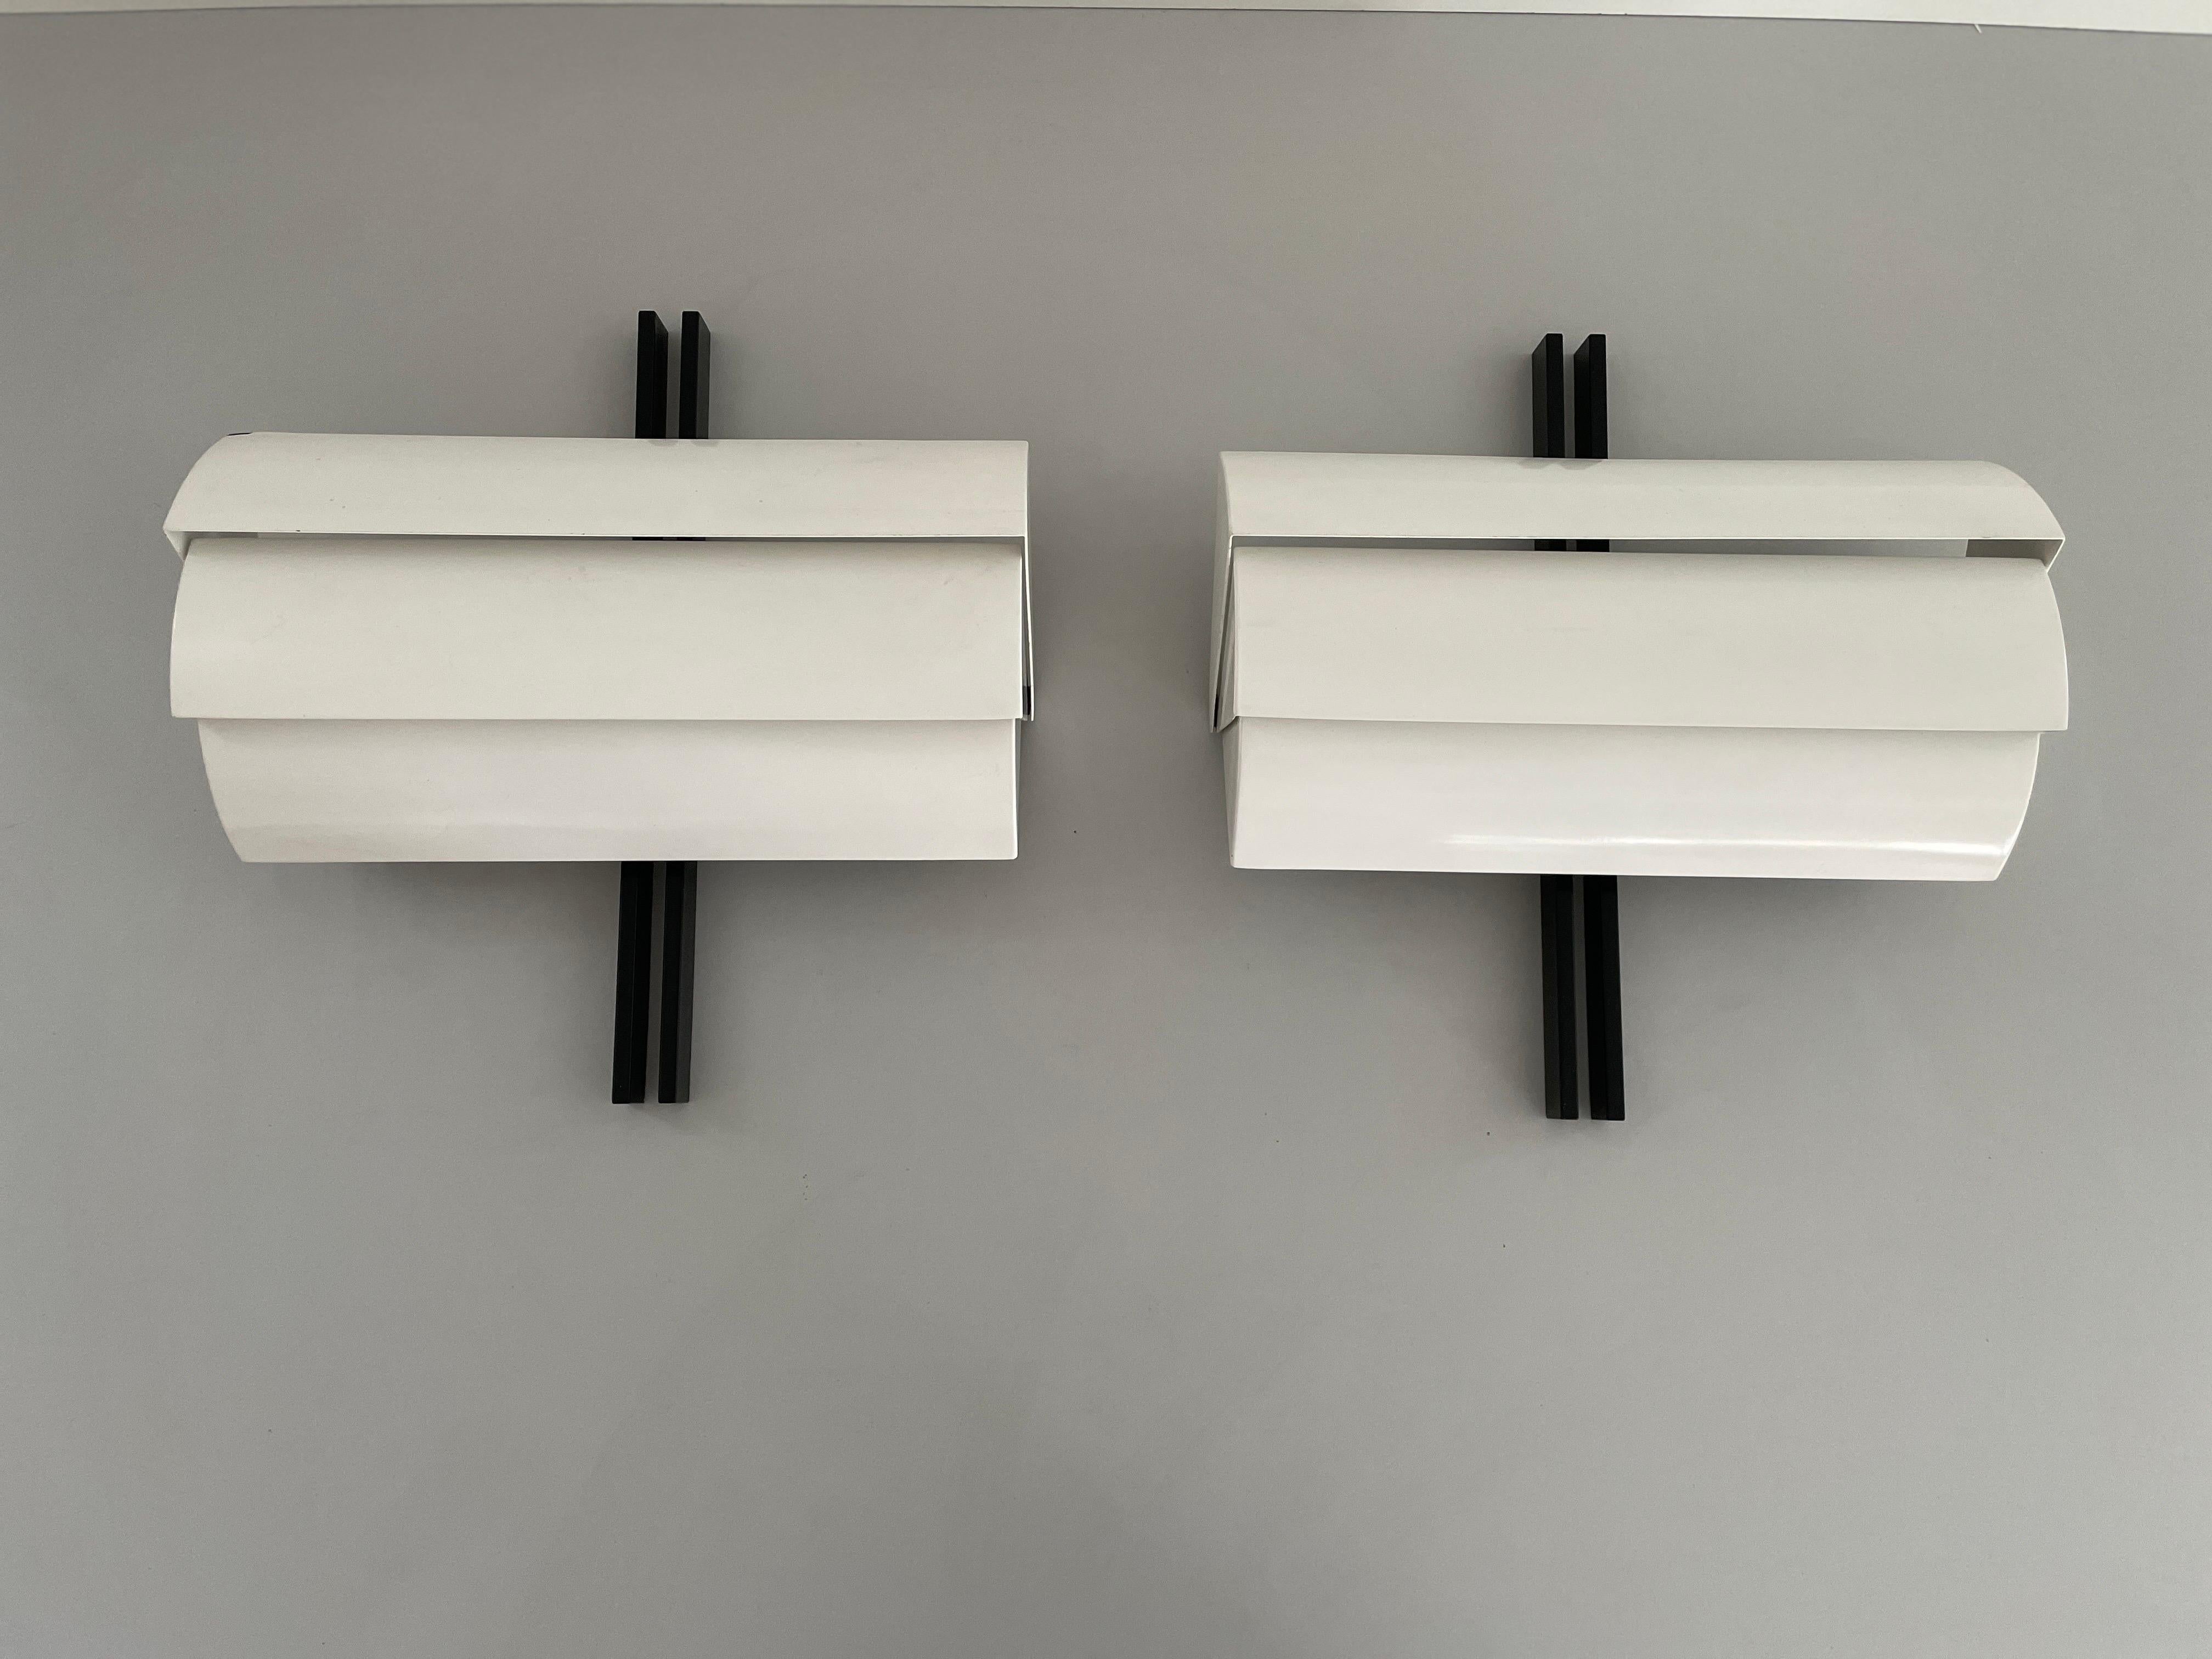 Paar Wandleuchter aus schwarzem und weißem Metall von E. Gismondi für Artemide, 1970er Jahre, Italien

Sehr elegante und minimalistische Wandlampen.

Die Lampen sind in sehr gutem Zustand.

Diese Lampen funktionieren mit E27 Standard-Glühbirnen.